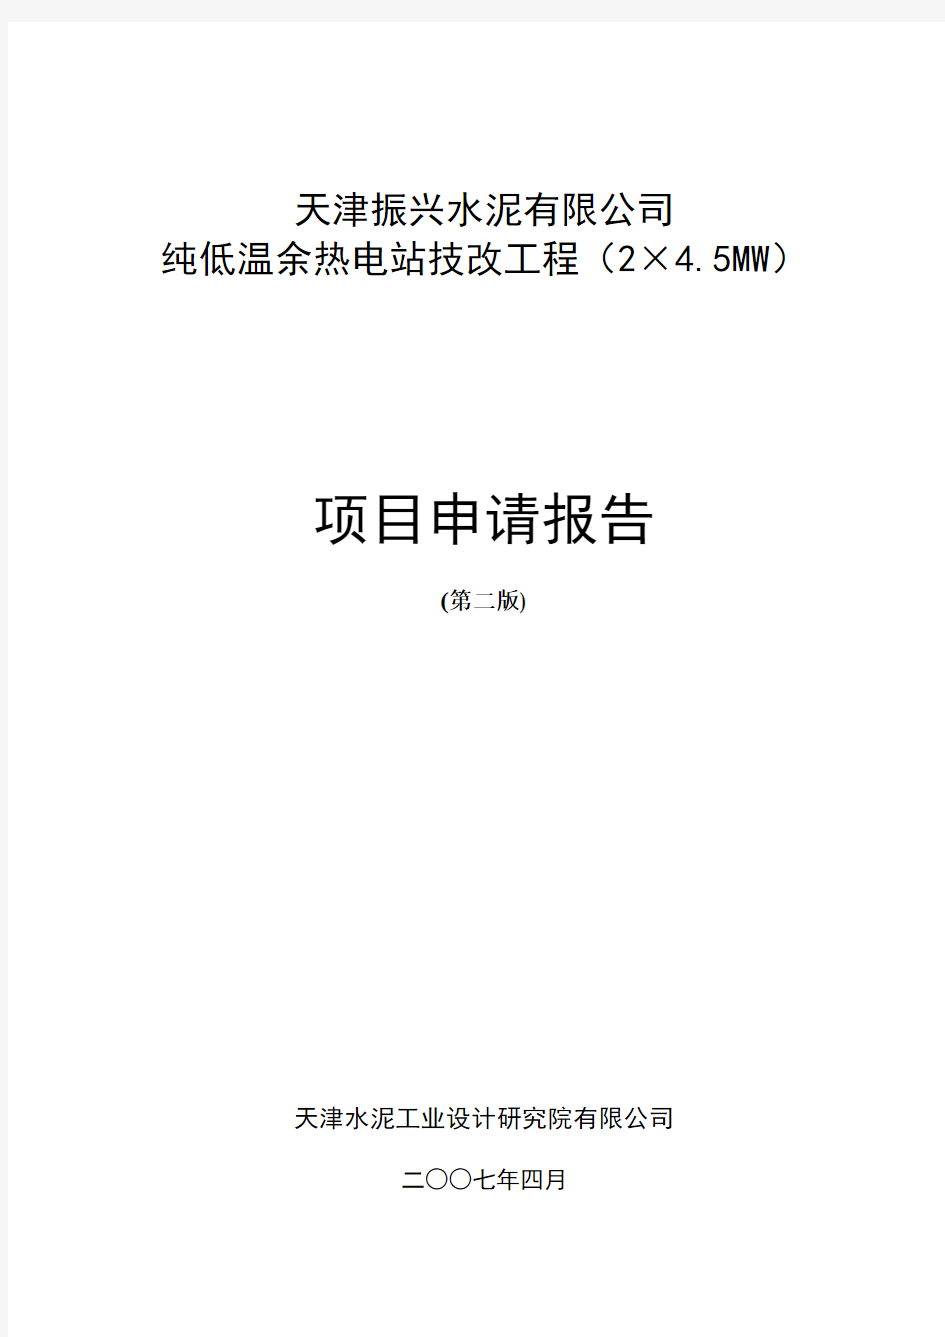 天津振兴水泥有限公司纯低温余热电站技改工程项目申请报告